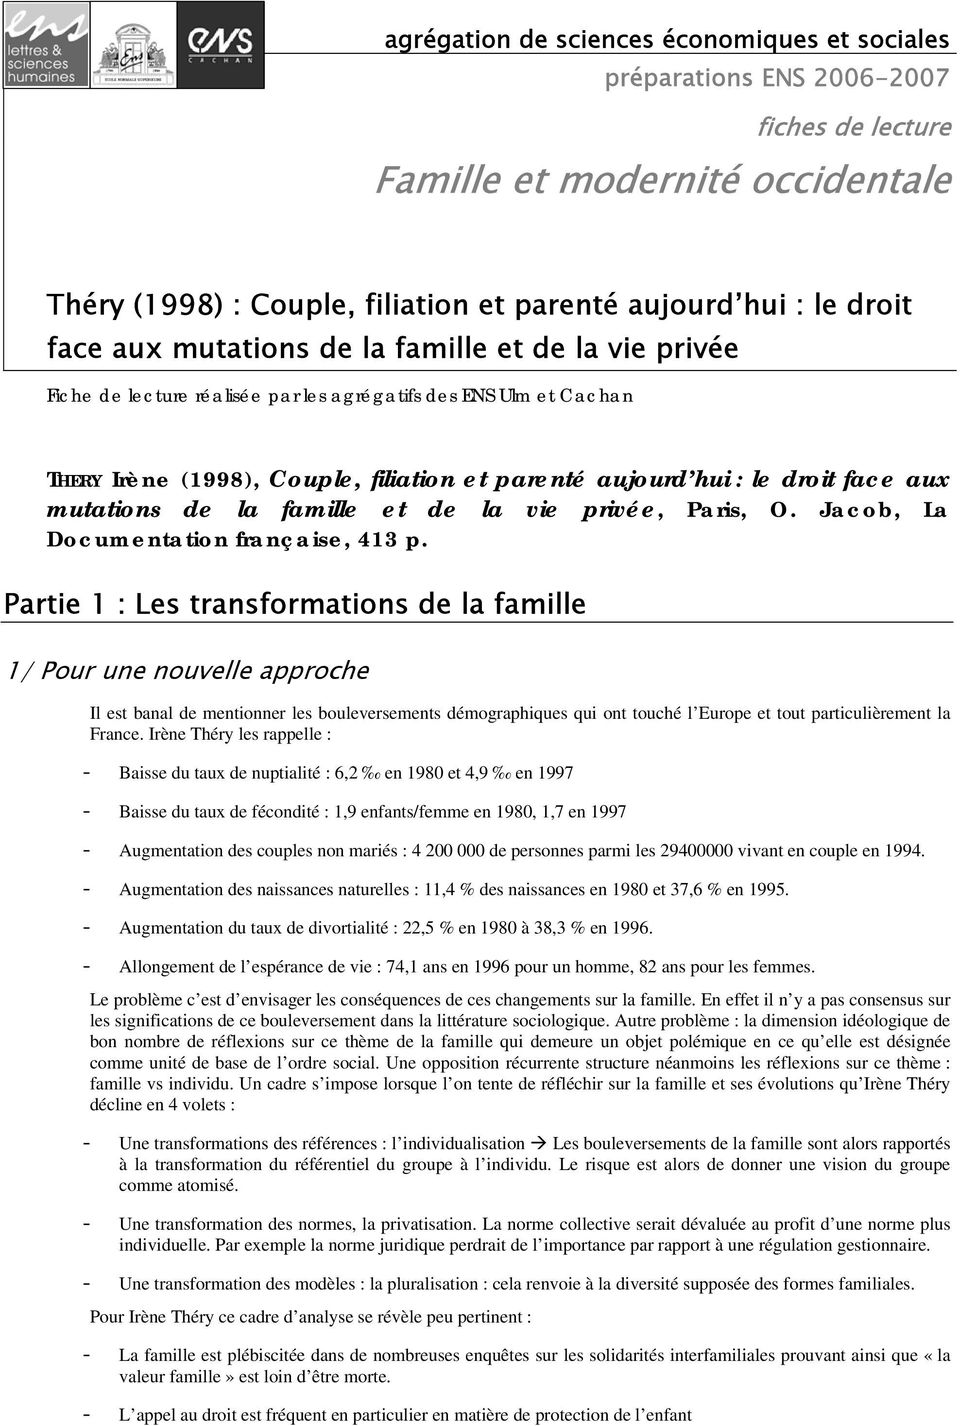 mutations de la famille et de la vie privée, Paris, O. Jacob, La Documentation française, 413 p.